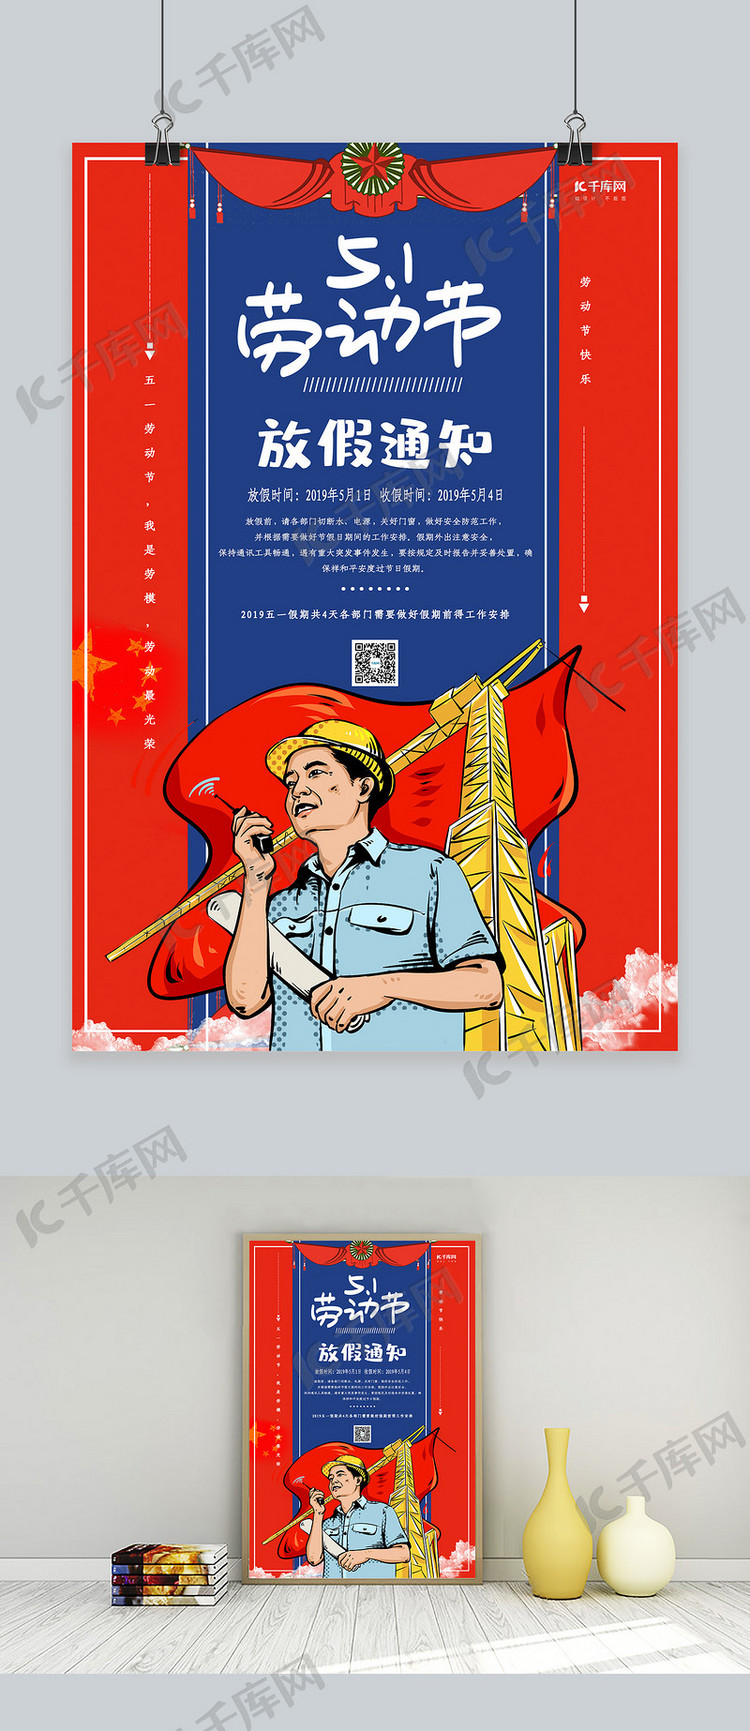 复古中国风五一劳动节放假通知海报